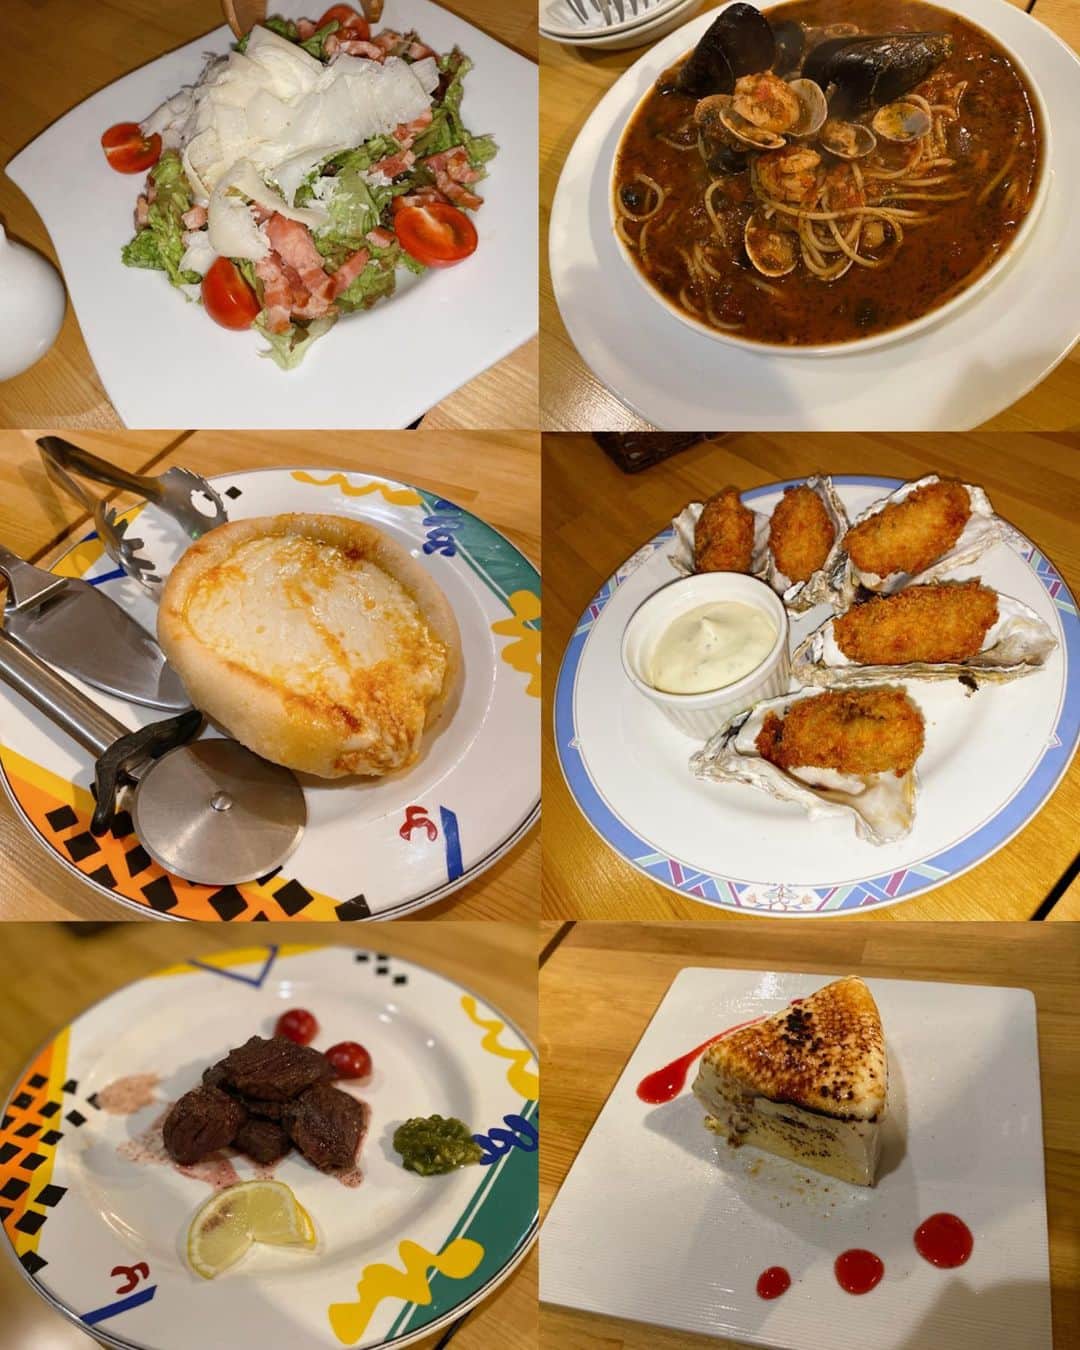 森下愛里沙(もりしたありさ) さんのインスタグラム写真 - (森下愛里沙(もりしたありさ) Instagram)「ㅤㅤㅤㅤㅤㅤㅤㅤㅤㅤㅤㅤㅤ ㅤㅤㅤㅤㅤㅤㅤㅤㅤㅤㅤㅤㅤ ㅤㅤㅤㅤㅤㅤㅤㅤㅤㅤㅤㅤㅤ ㅤㅤㅤㅤㅤㅤㅤㅤㅤㅤㅤㅤㅤ 新宿にある @umibal.shinjuku さんへ 行ってきました🧀 ㅤㅤㅤㅤㅤㅤㅤㅤㅤㅤㅤㅤㅤ ㅤㅤㅤㅤㅤㅤㅤㅤㅤㅤㅤㅤㅤ 隠れ家みたいなお店🍷 ㅤㅤㅤㅤㅤㅤㅤㅤㅤㅤㅤㅤㅤ ㅤㅤㅤㅤㅤㅤㅤㅤㅤㅤㅤㅤㅤ "ウミバル"ということもあって 海鮮のお料理がたくさんありました🐟 牡蠣をフライで食べたんですけど 凄く食べやすくて美味しかったです💓 ㅤㅤㅤㅤㅤㅤㅤㅤㅤㅤㅤㅤㅤ ㅤㅤㅤㅤㅤㅤㅤㅤㅤㅤㅤㅤㅤ 全部美味しかってたけど個人的に一番好きだったのは "シカゴピザ" 🍕 チーズ大好きな私にとっては大好物商品でした🥺👏🏻 ㅤㅤㅤㅤㅤㅤㅤㅤㅤㅤㅤㅤㅤ ㅤㅤㅤㅤㅤㅤㅤㅤㅤㅤㅤㅤㅤ ㅤㅤㅤㅤㅤㅤㅤㅤㅤㅤㅤㅤㅤ 女子会にもってこいだなと感じたお店🍷 もちろん友達同士でもデートでも使える 雰囲気の良いお店でした✨ ㅤㅤㅤㅤㅤㅤㅤㅤㅤㅤㅤㅤㅤ ㅤㅤㅤㅤㅤㅤㅤㅤㅤㅤㅤㅤㅤ ㅤㅤㅤㅤㅤㅤㅤㅤㅤㅤㅤㅤㅤ この日のワンピースは @spicaglow さんのもの👗 フレアになっていてとっても可愛くて 着心地がサラッとしていて楽ちん☝️ ㅤㅤㅤㅤㅤㅤㅤㅤㅤㅤㅤㅤㅤ ⁣●サイトで購入した商品を1000円引きで買える クーポンがあるので良かったら使用してください🙋🏻‍♀️ ⁣→クーポンコード : arsg⁣ ⁣ㅤㅤㅤㅤㅤㅤㅤㅤㅤㅤㅤㅤㅤ ㅤㅤㅤㅤㅤㅤㅤㅤㅤㅤㅤㅤㅤ ㅤㅤㅤㅤㅤㅤㅤㅤㅤㅤㅤㅤㅤ 時計 @mavenjapan  シンプルな時計なのでどんな洋服にも合わせれる有能アイテム⌚️ ㅤㅤㅤㅤㅤㅤㅤㅤㅤㅤㅤㅤㅤ ●10パーセントoffで購入できるクーポン載せておきます🙋🏻‍♀️ →クーポンコード : miniaes ㅤㅤㅤㅤㅤㅤㅤㅤㅤㅤㅤㅤㅤ ㅤㅤㅤㅤㅤㅤㅤㅤㅤㅤㅤㅤㅤ  #umiバル #新宿グルメ #東京グルメ #新宿バル #新宿イタリアン #魚介イタリアン #コラボベース #spicaglow⁣ #spicaglowstyle⁣ #マベン #マベンウォッチズ #時計 #腕時計 #mavenwatches #ファッション #ワンピースコーデ #ワンピース #韓国ファッション #今日のコーデ #夏コーデ #outfit #like4likes #pr #ootd #instagood #l4l #instalike #fashion #팔로미 #팔로우미」7月16日 20時49分 - mini.ari